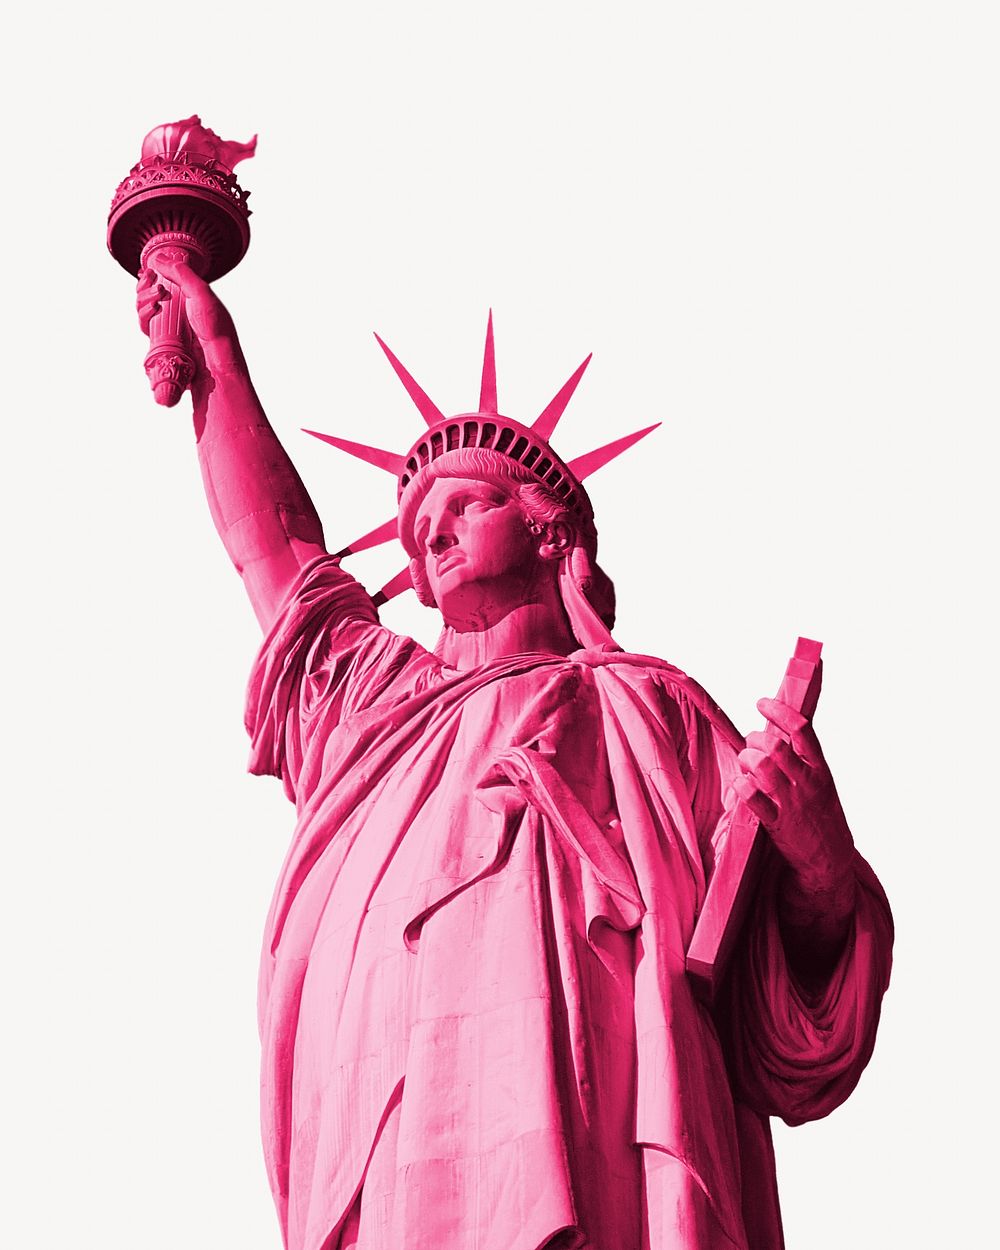 Pink liberty statue image